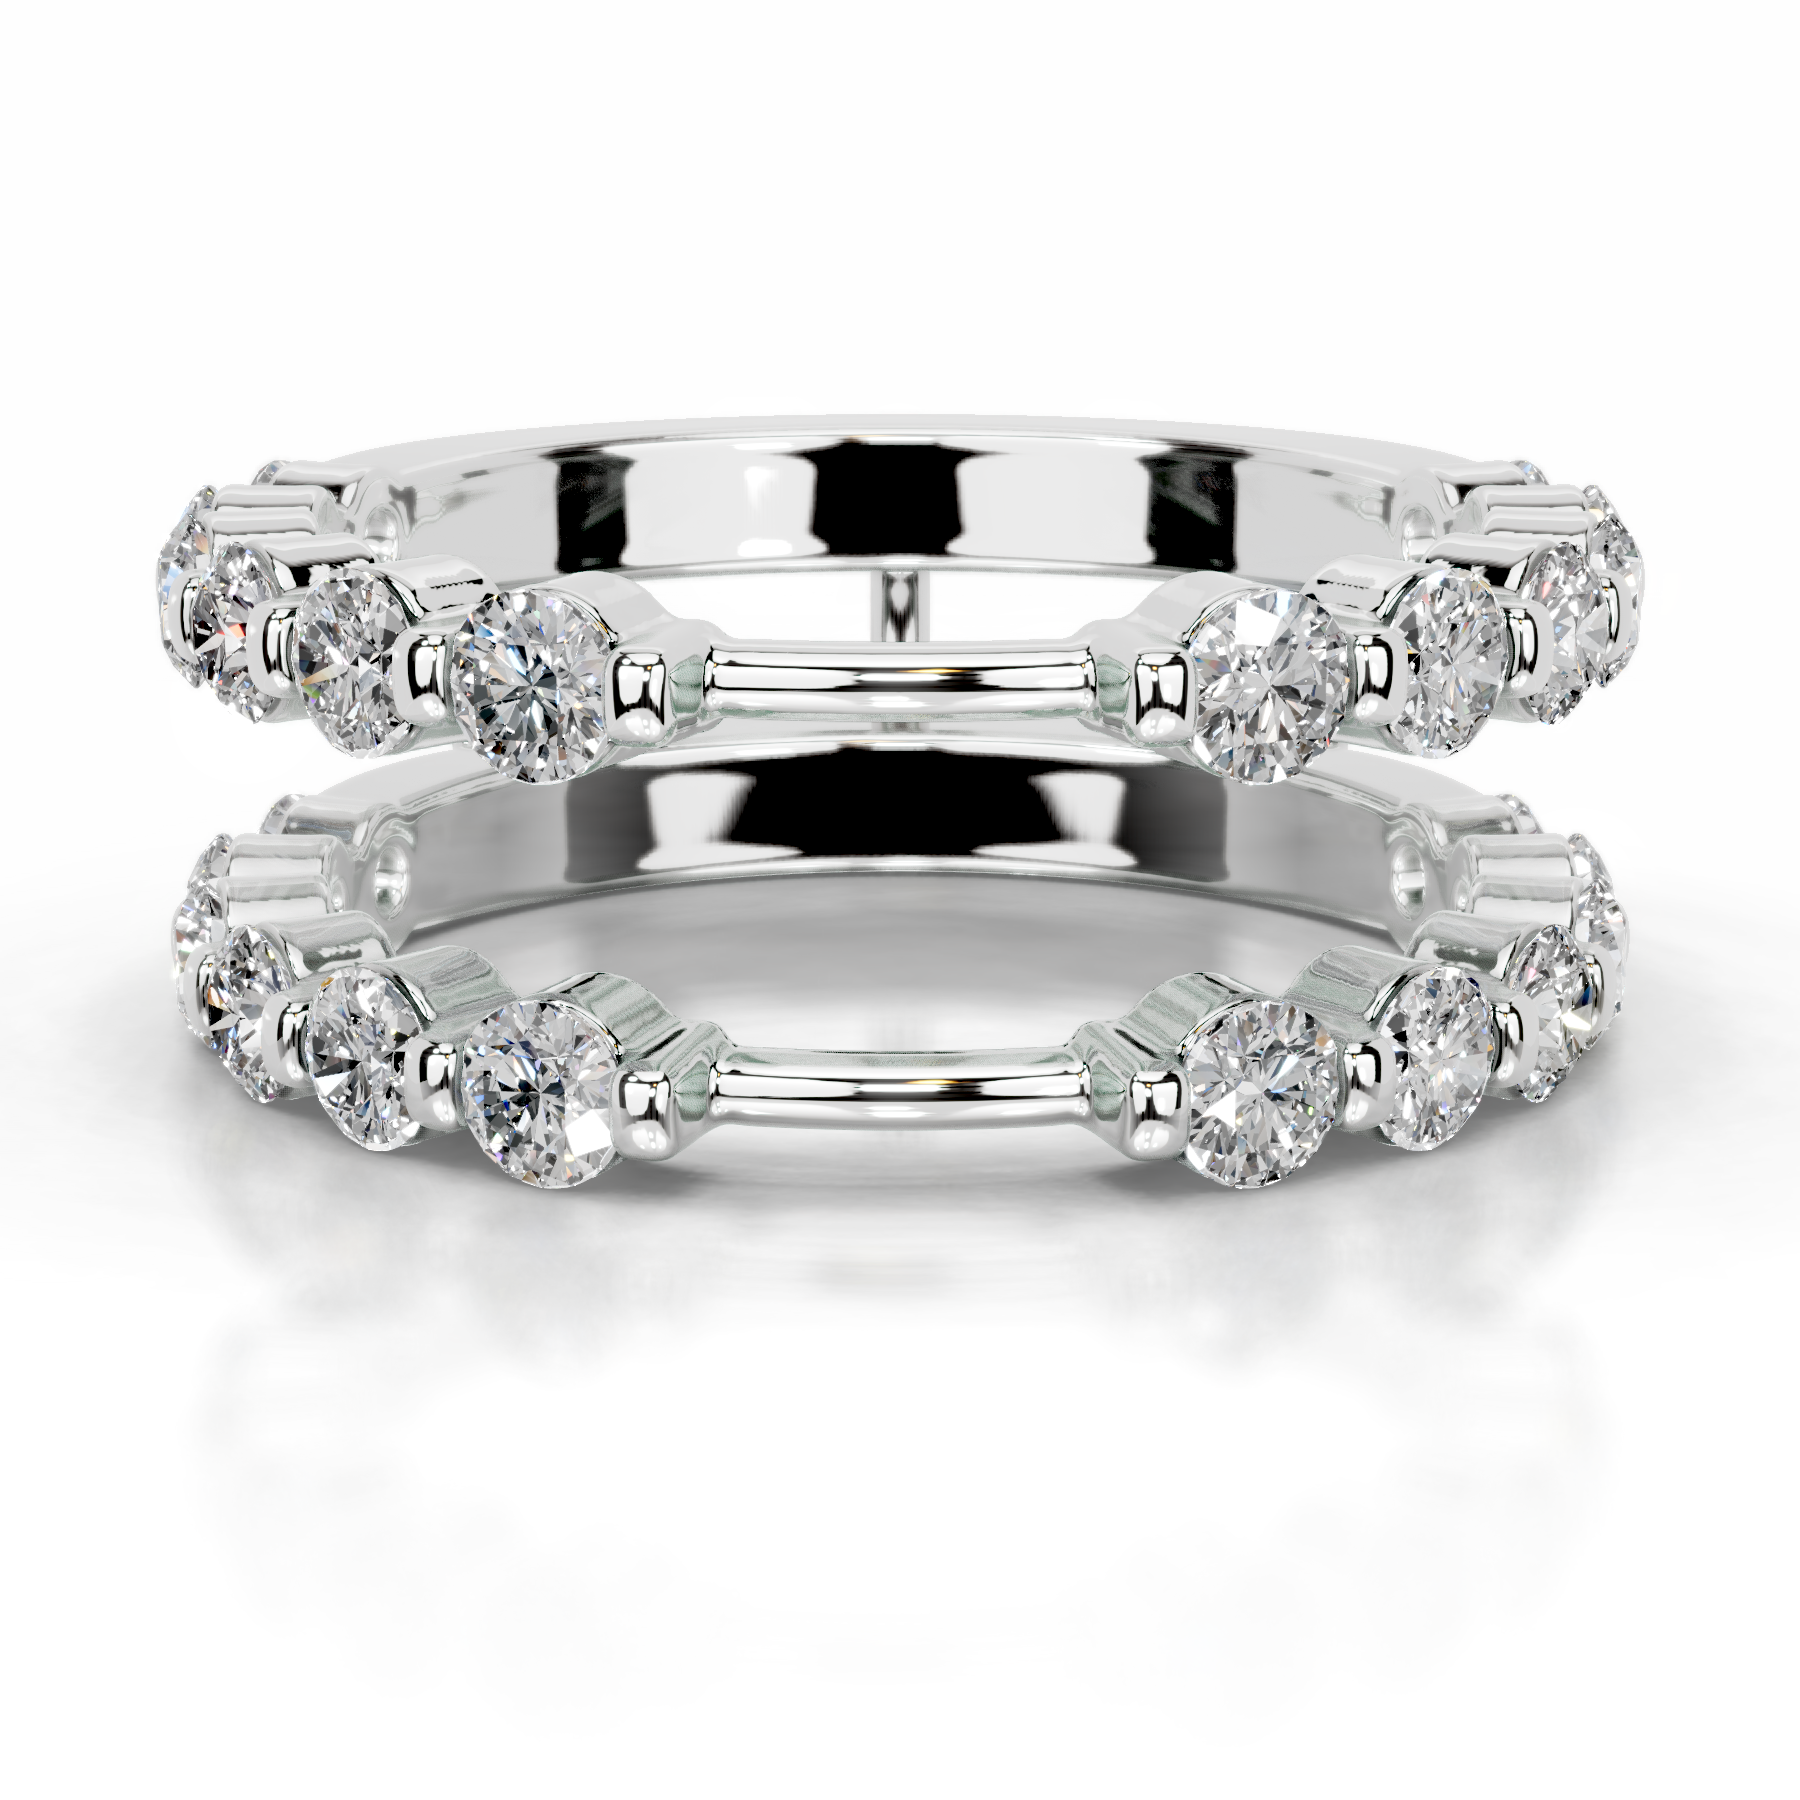 Ashley Diamond Wedding Ring   (1.25 Carat) -Platinum